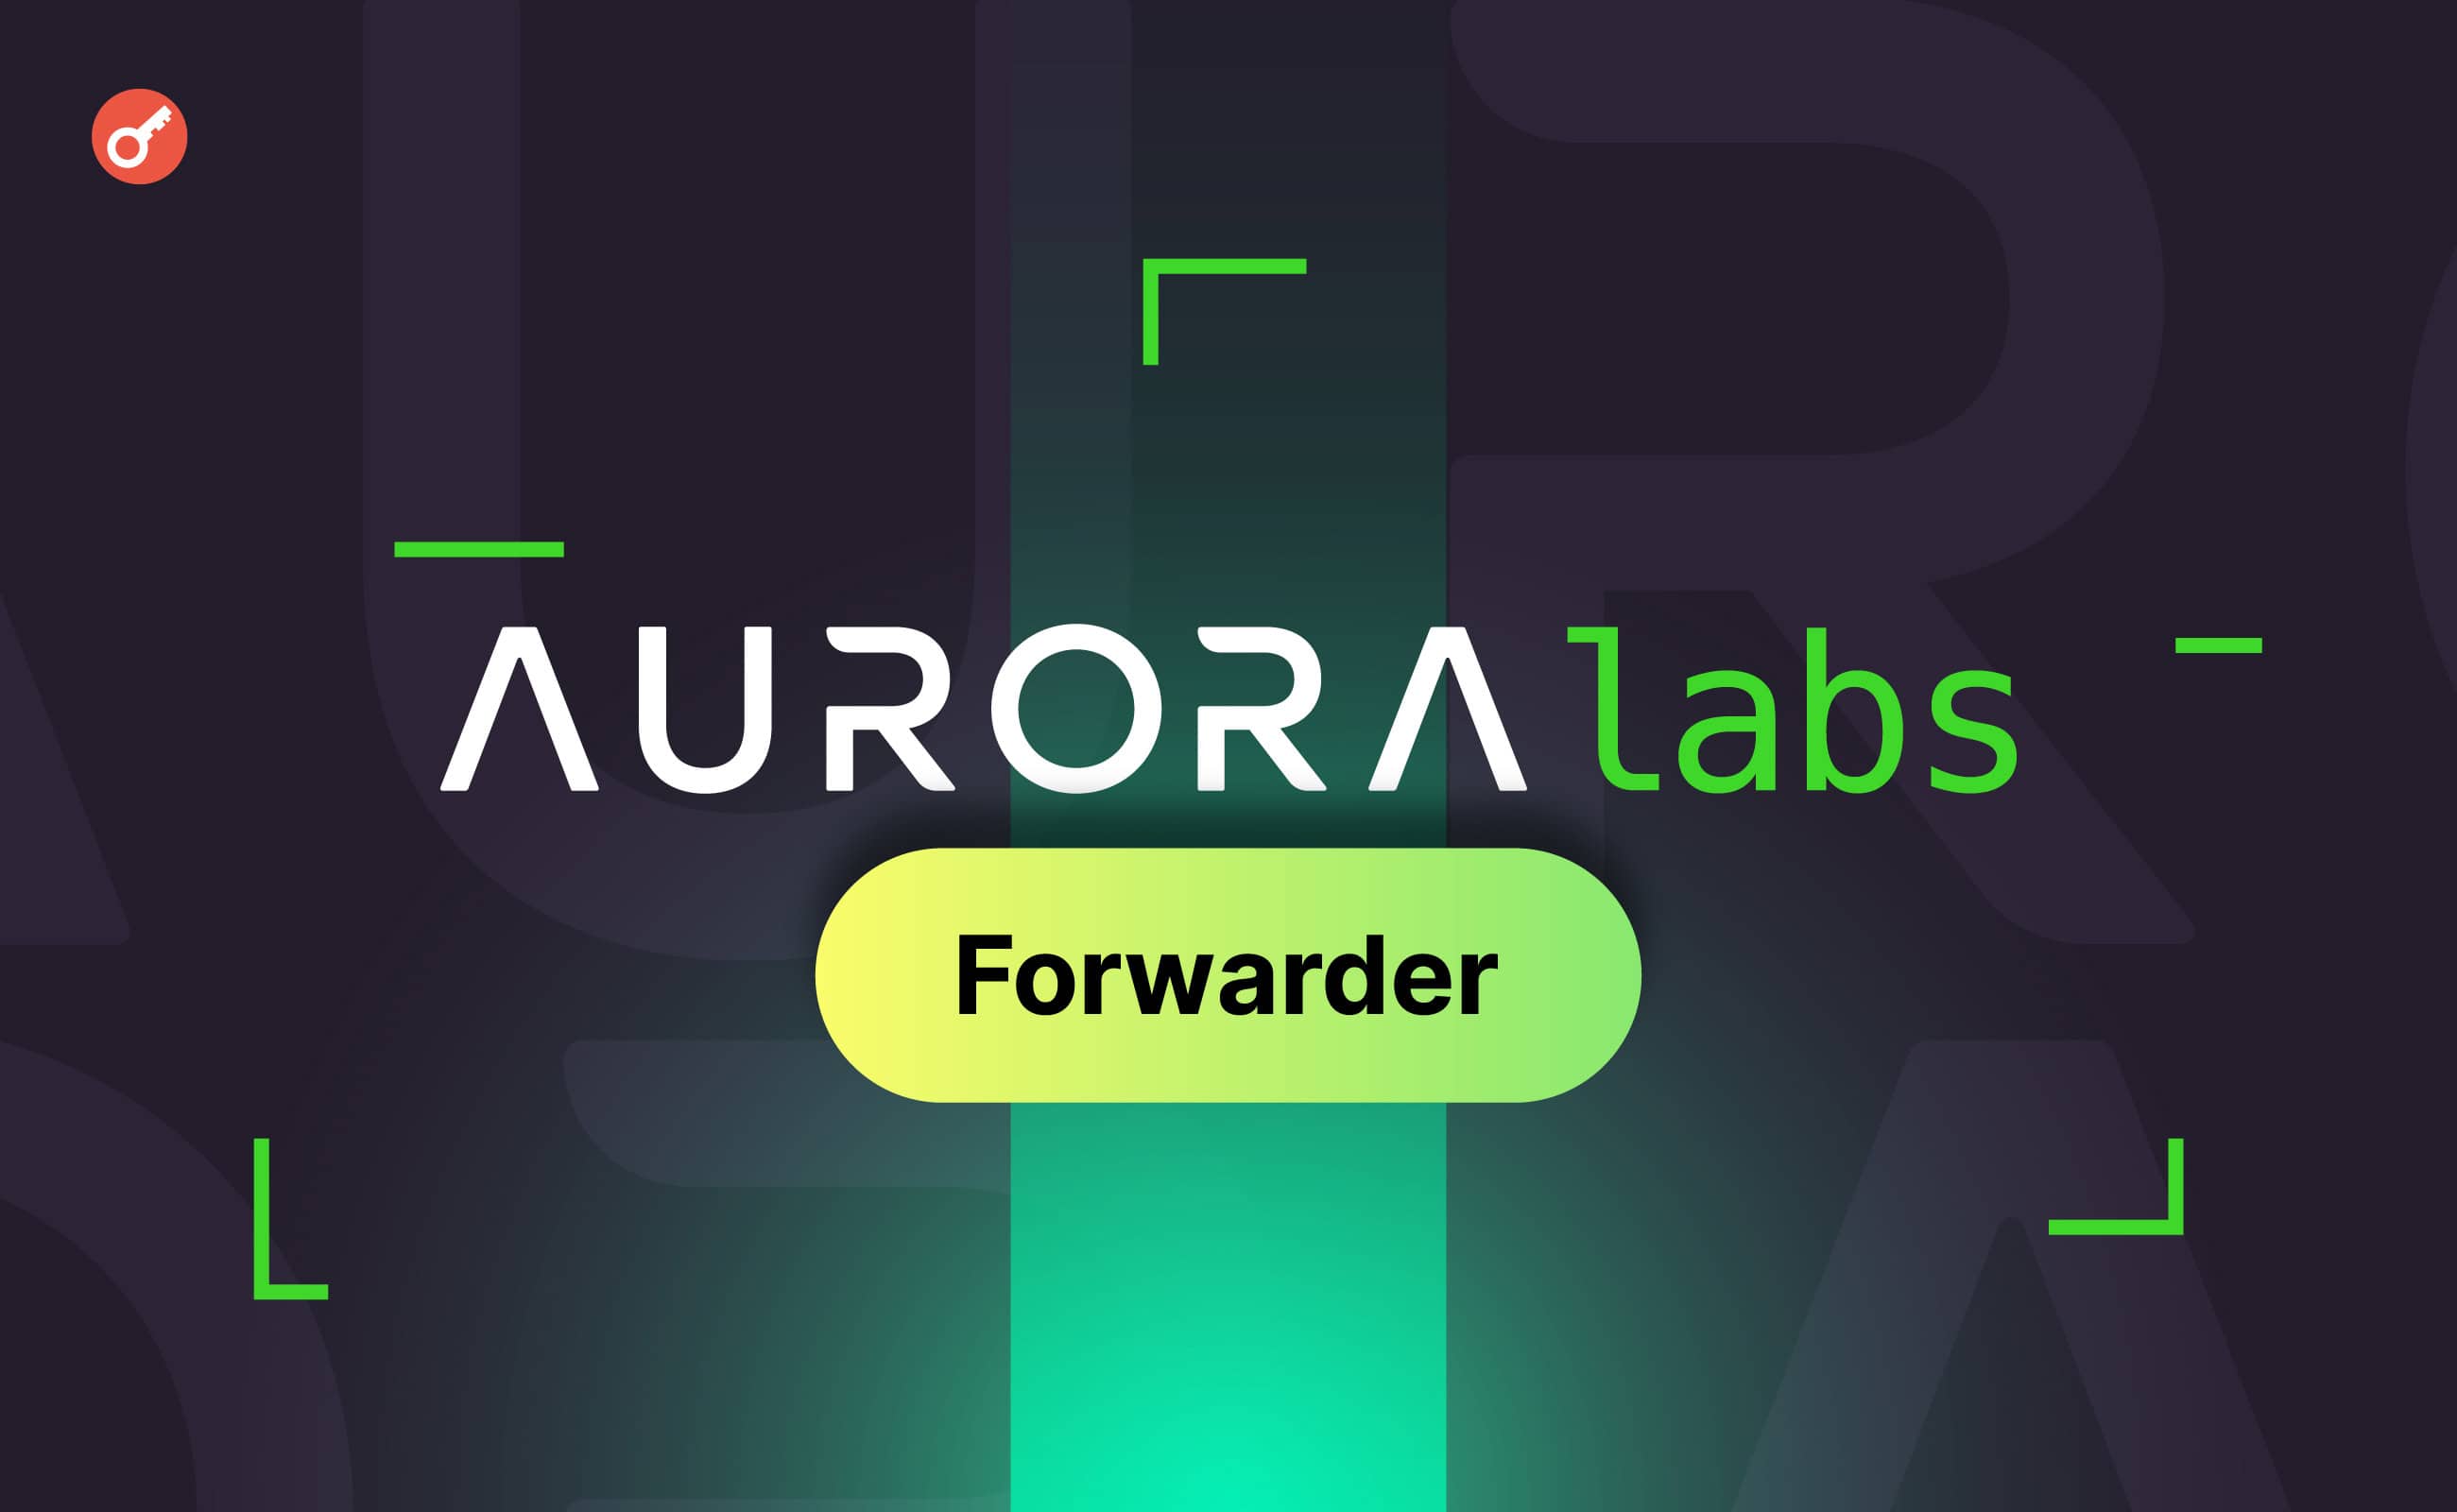 Aurora Labs запустила рішення Forwarder для вирішення проблеми фрагментації блокчейну. Головний колаж новини.